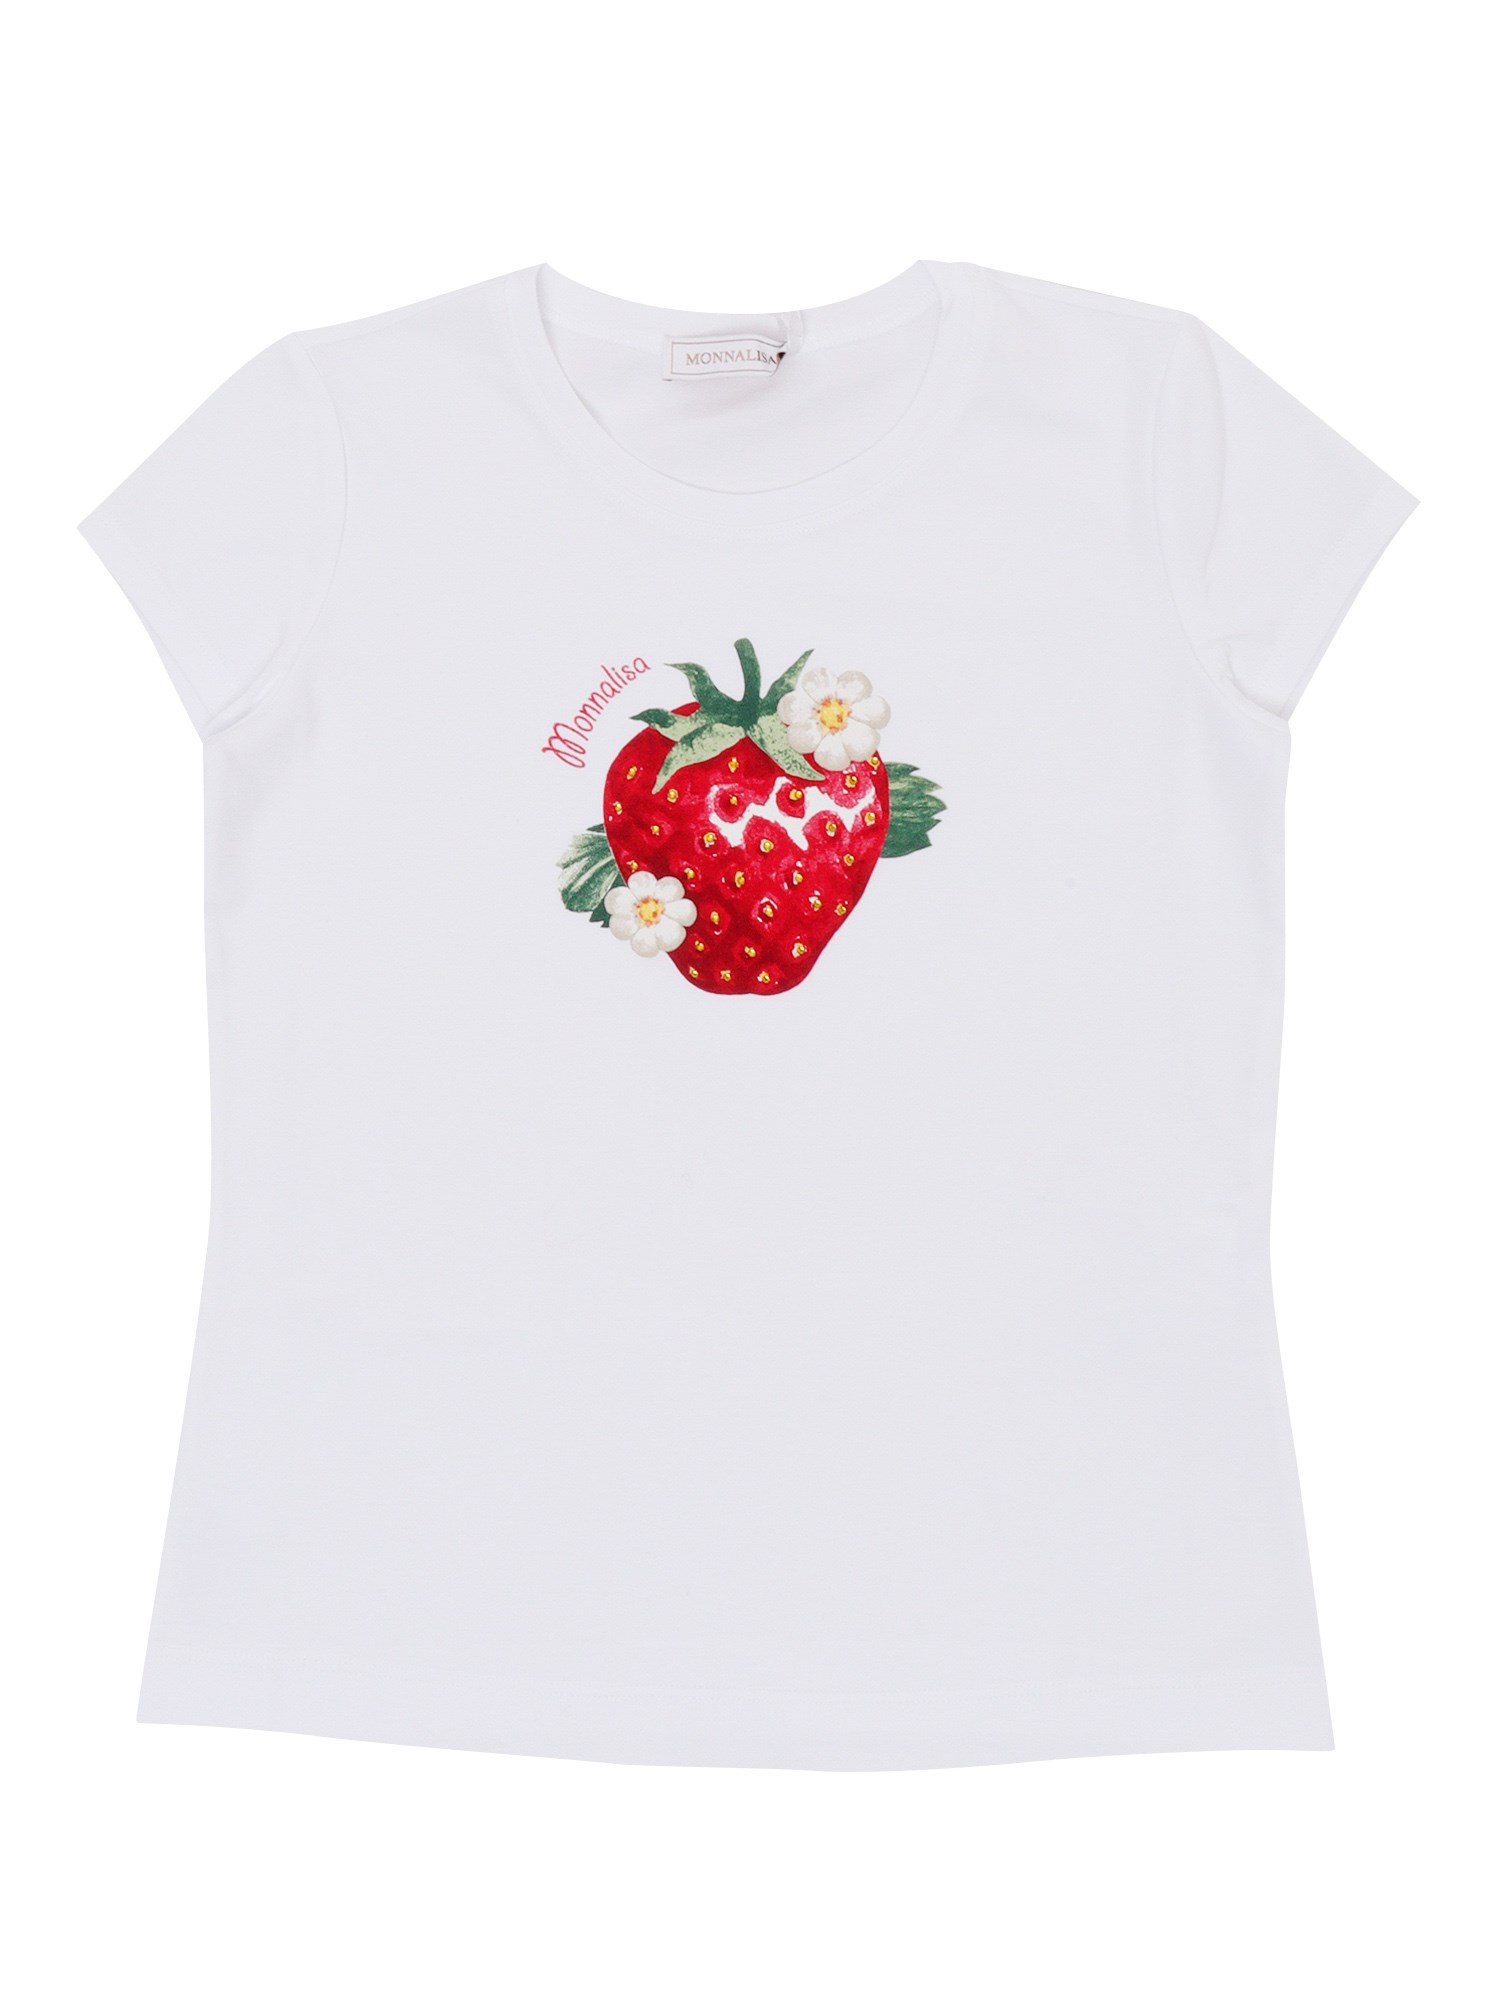 Monnalisa White T-shirt With Strawberry Pattern